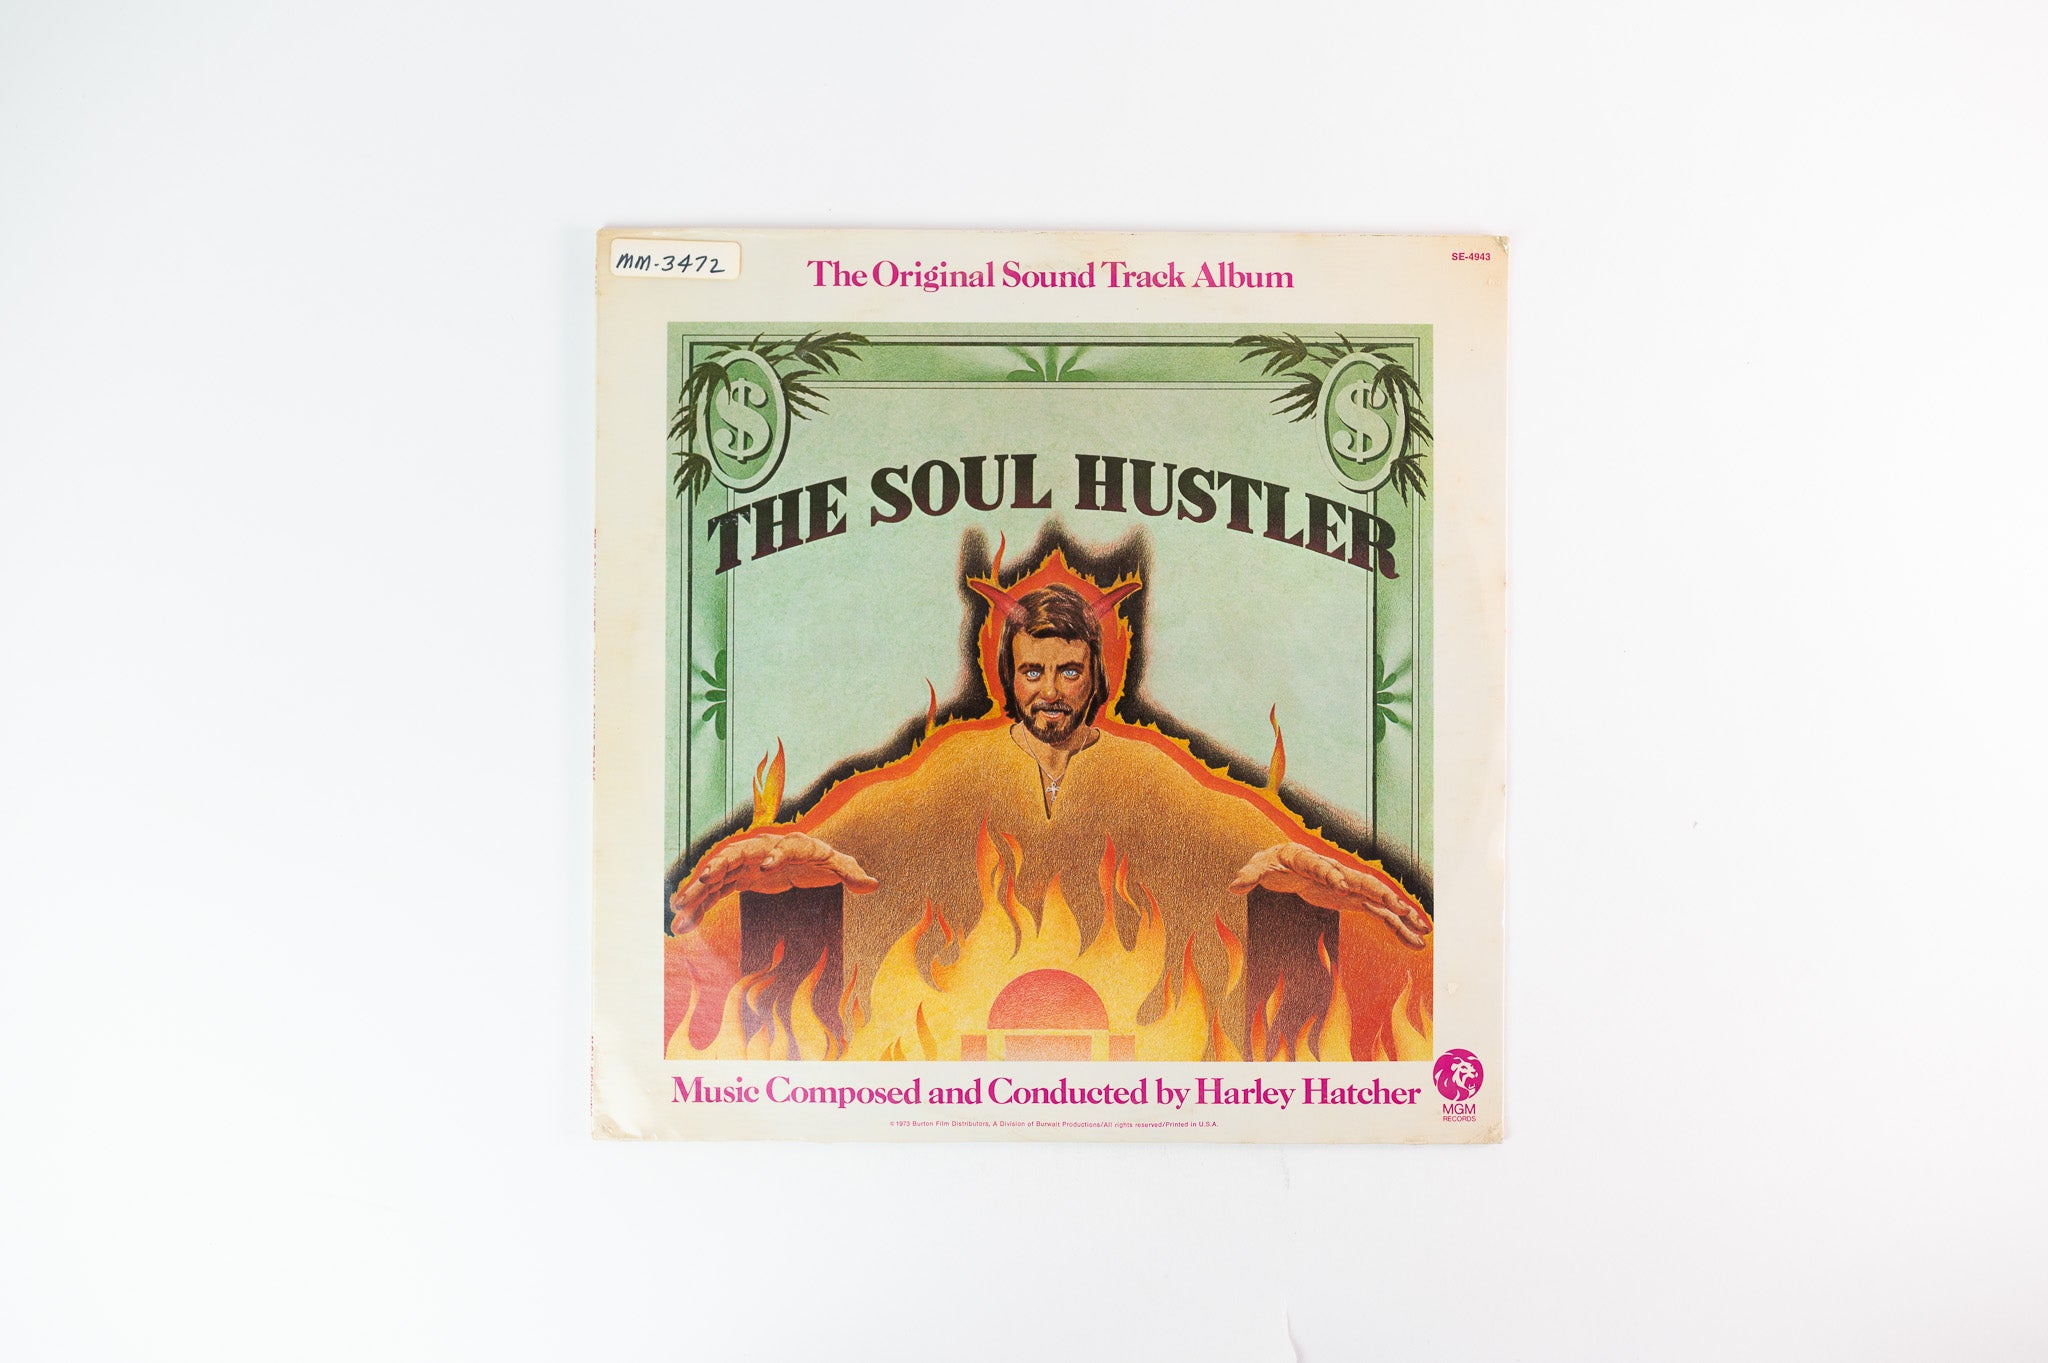 Harley Hatcher - The Soul Hustler (The Original Sound Track Album) on MGM Sealed